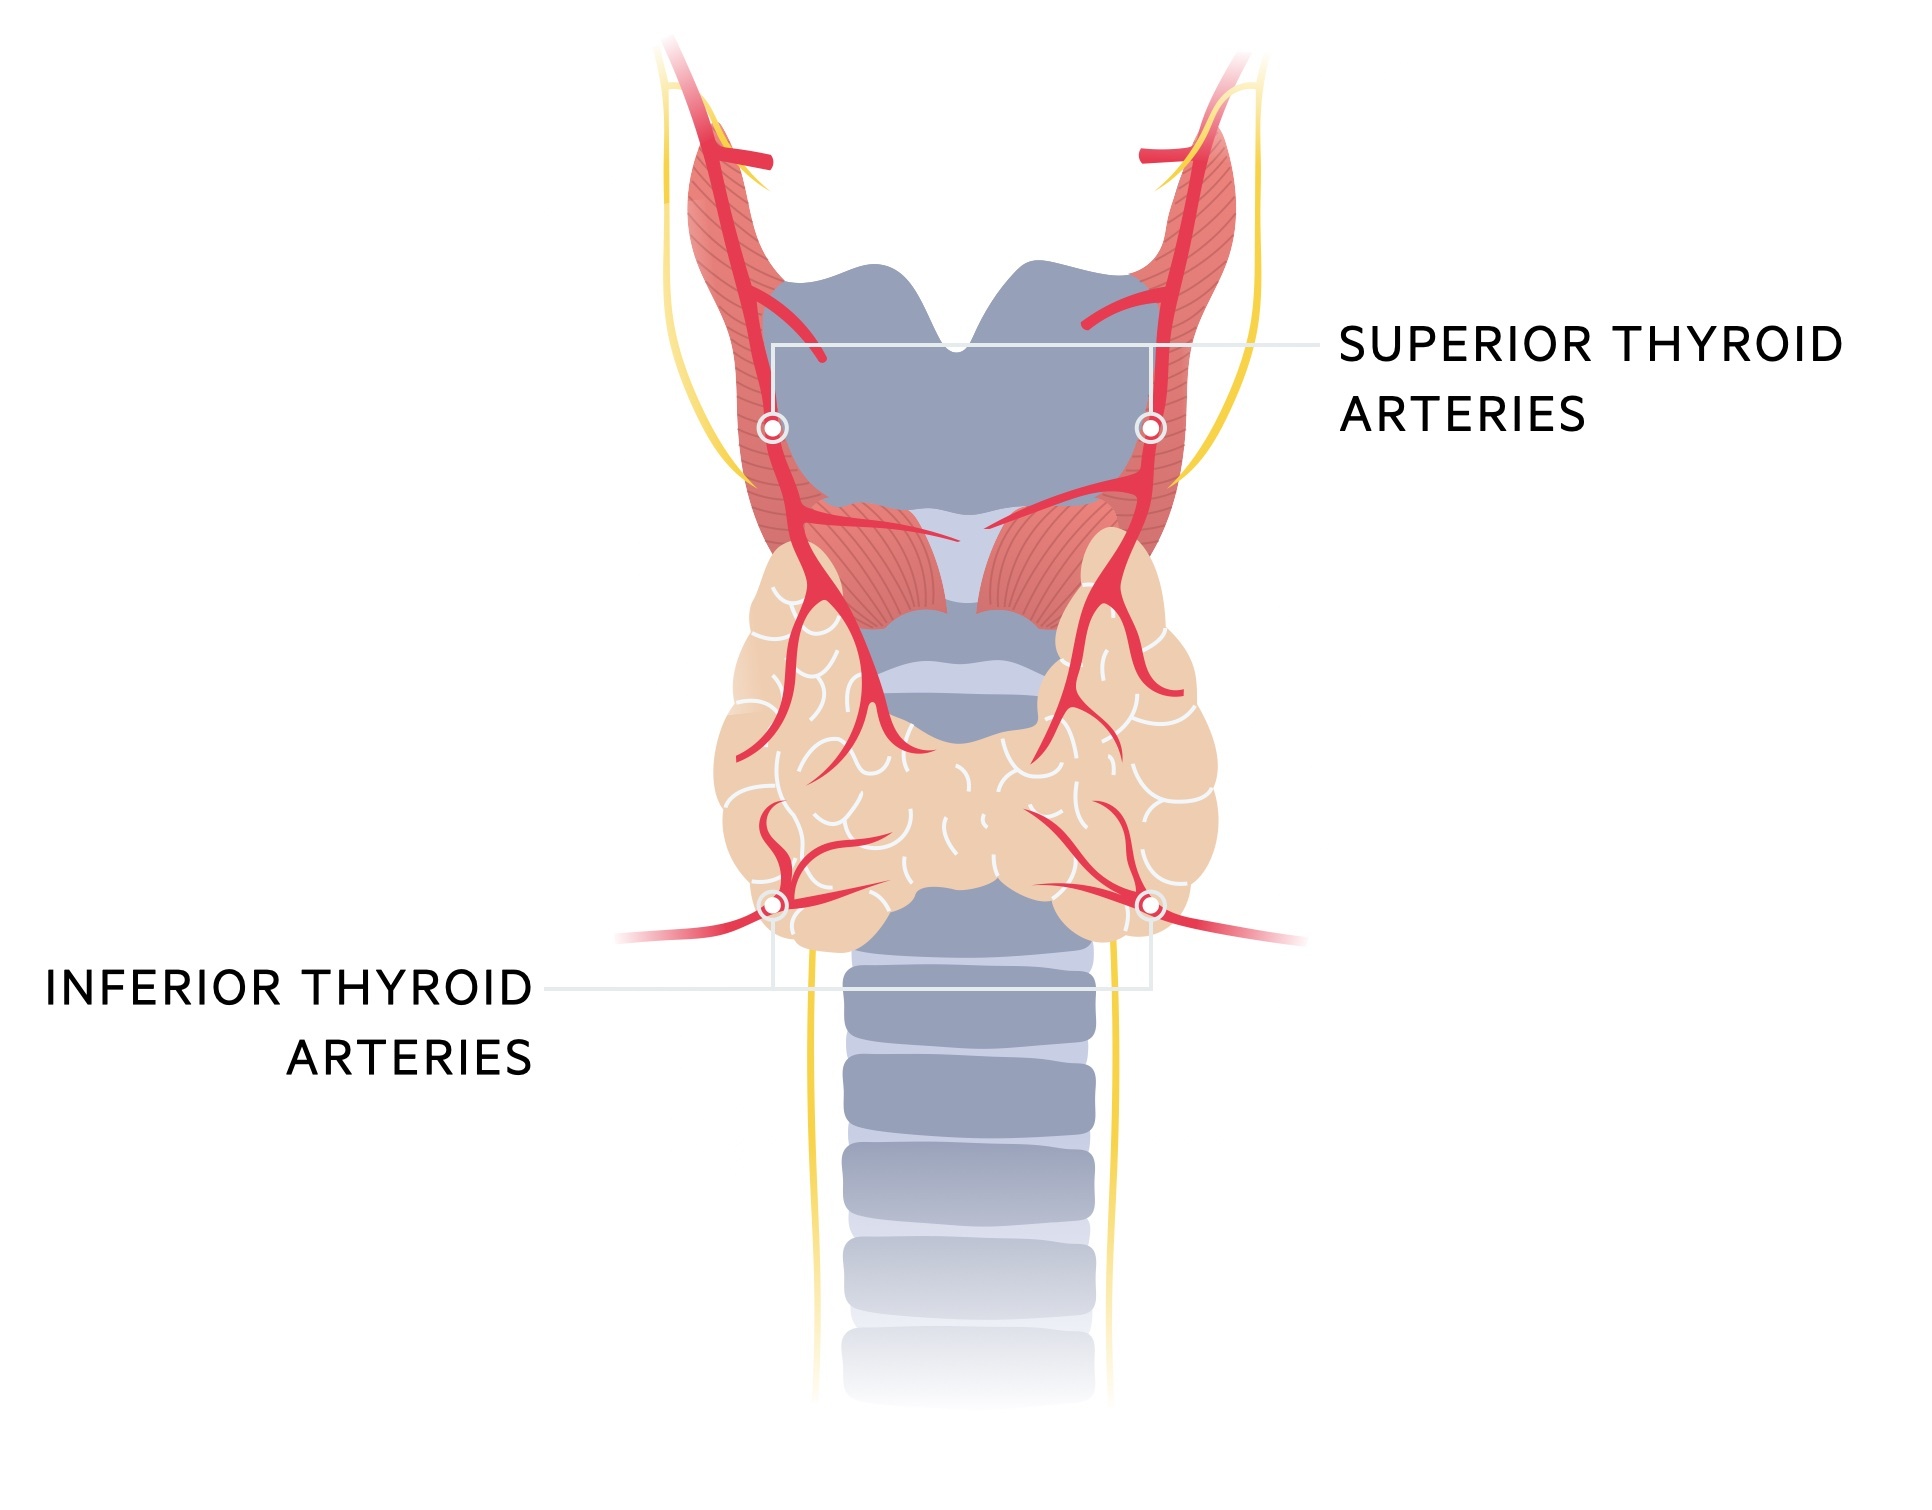 Thyroid artery anatomy